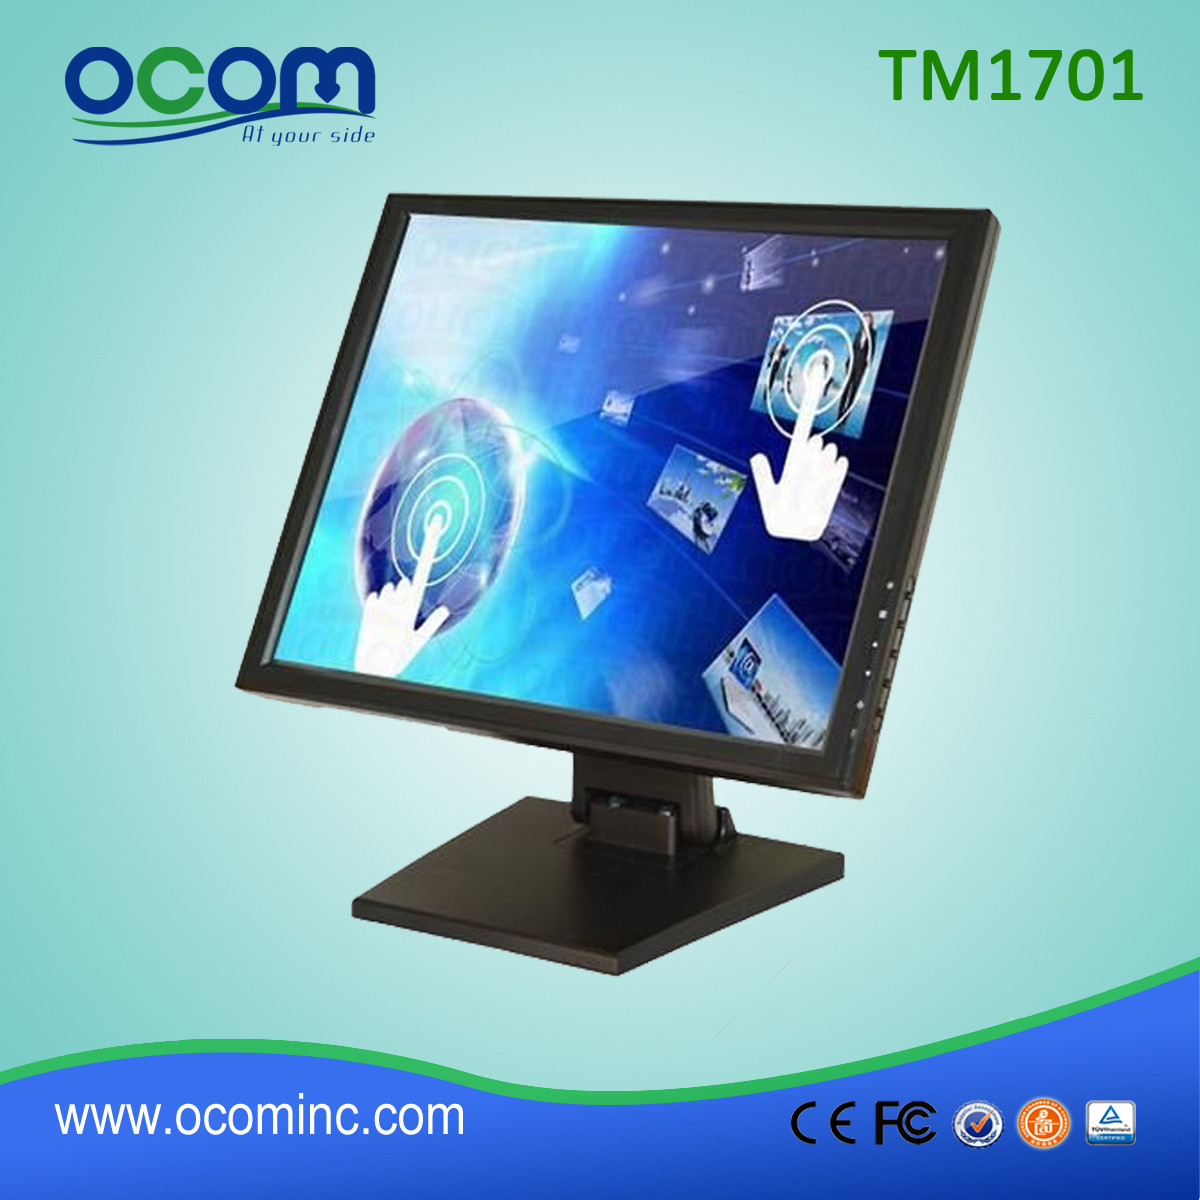 TM1701 17 calowy wyświetlacz LCD monitora 5wire rezystancyjny dla systemu POS